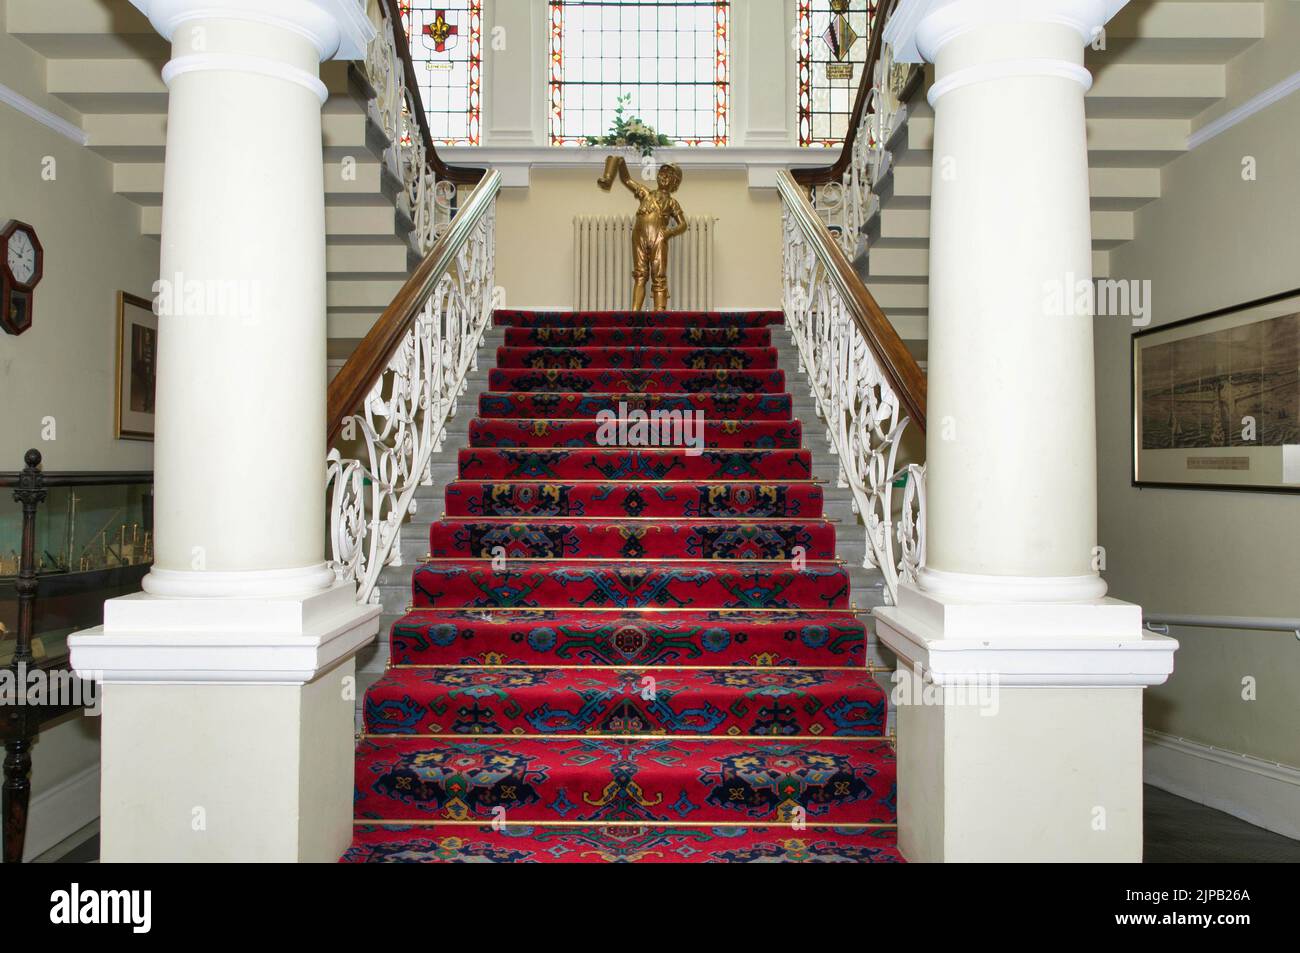 Le bel escalier de l'hôtel de ville de Cleethorpes avec tapis rouge Banque D'Images